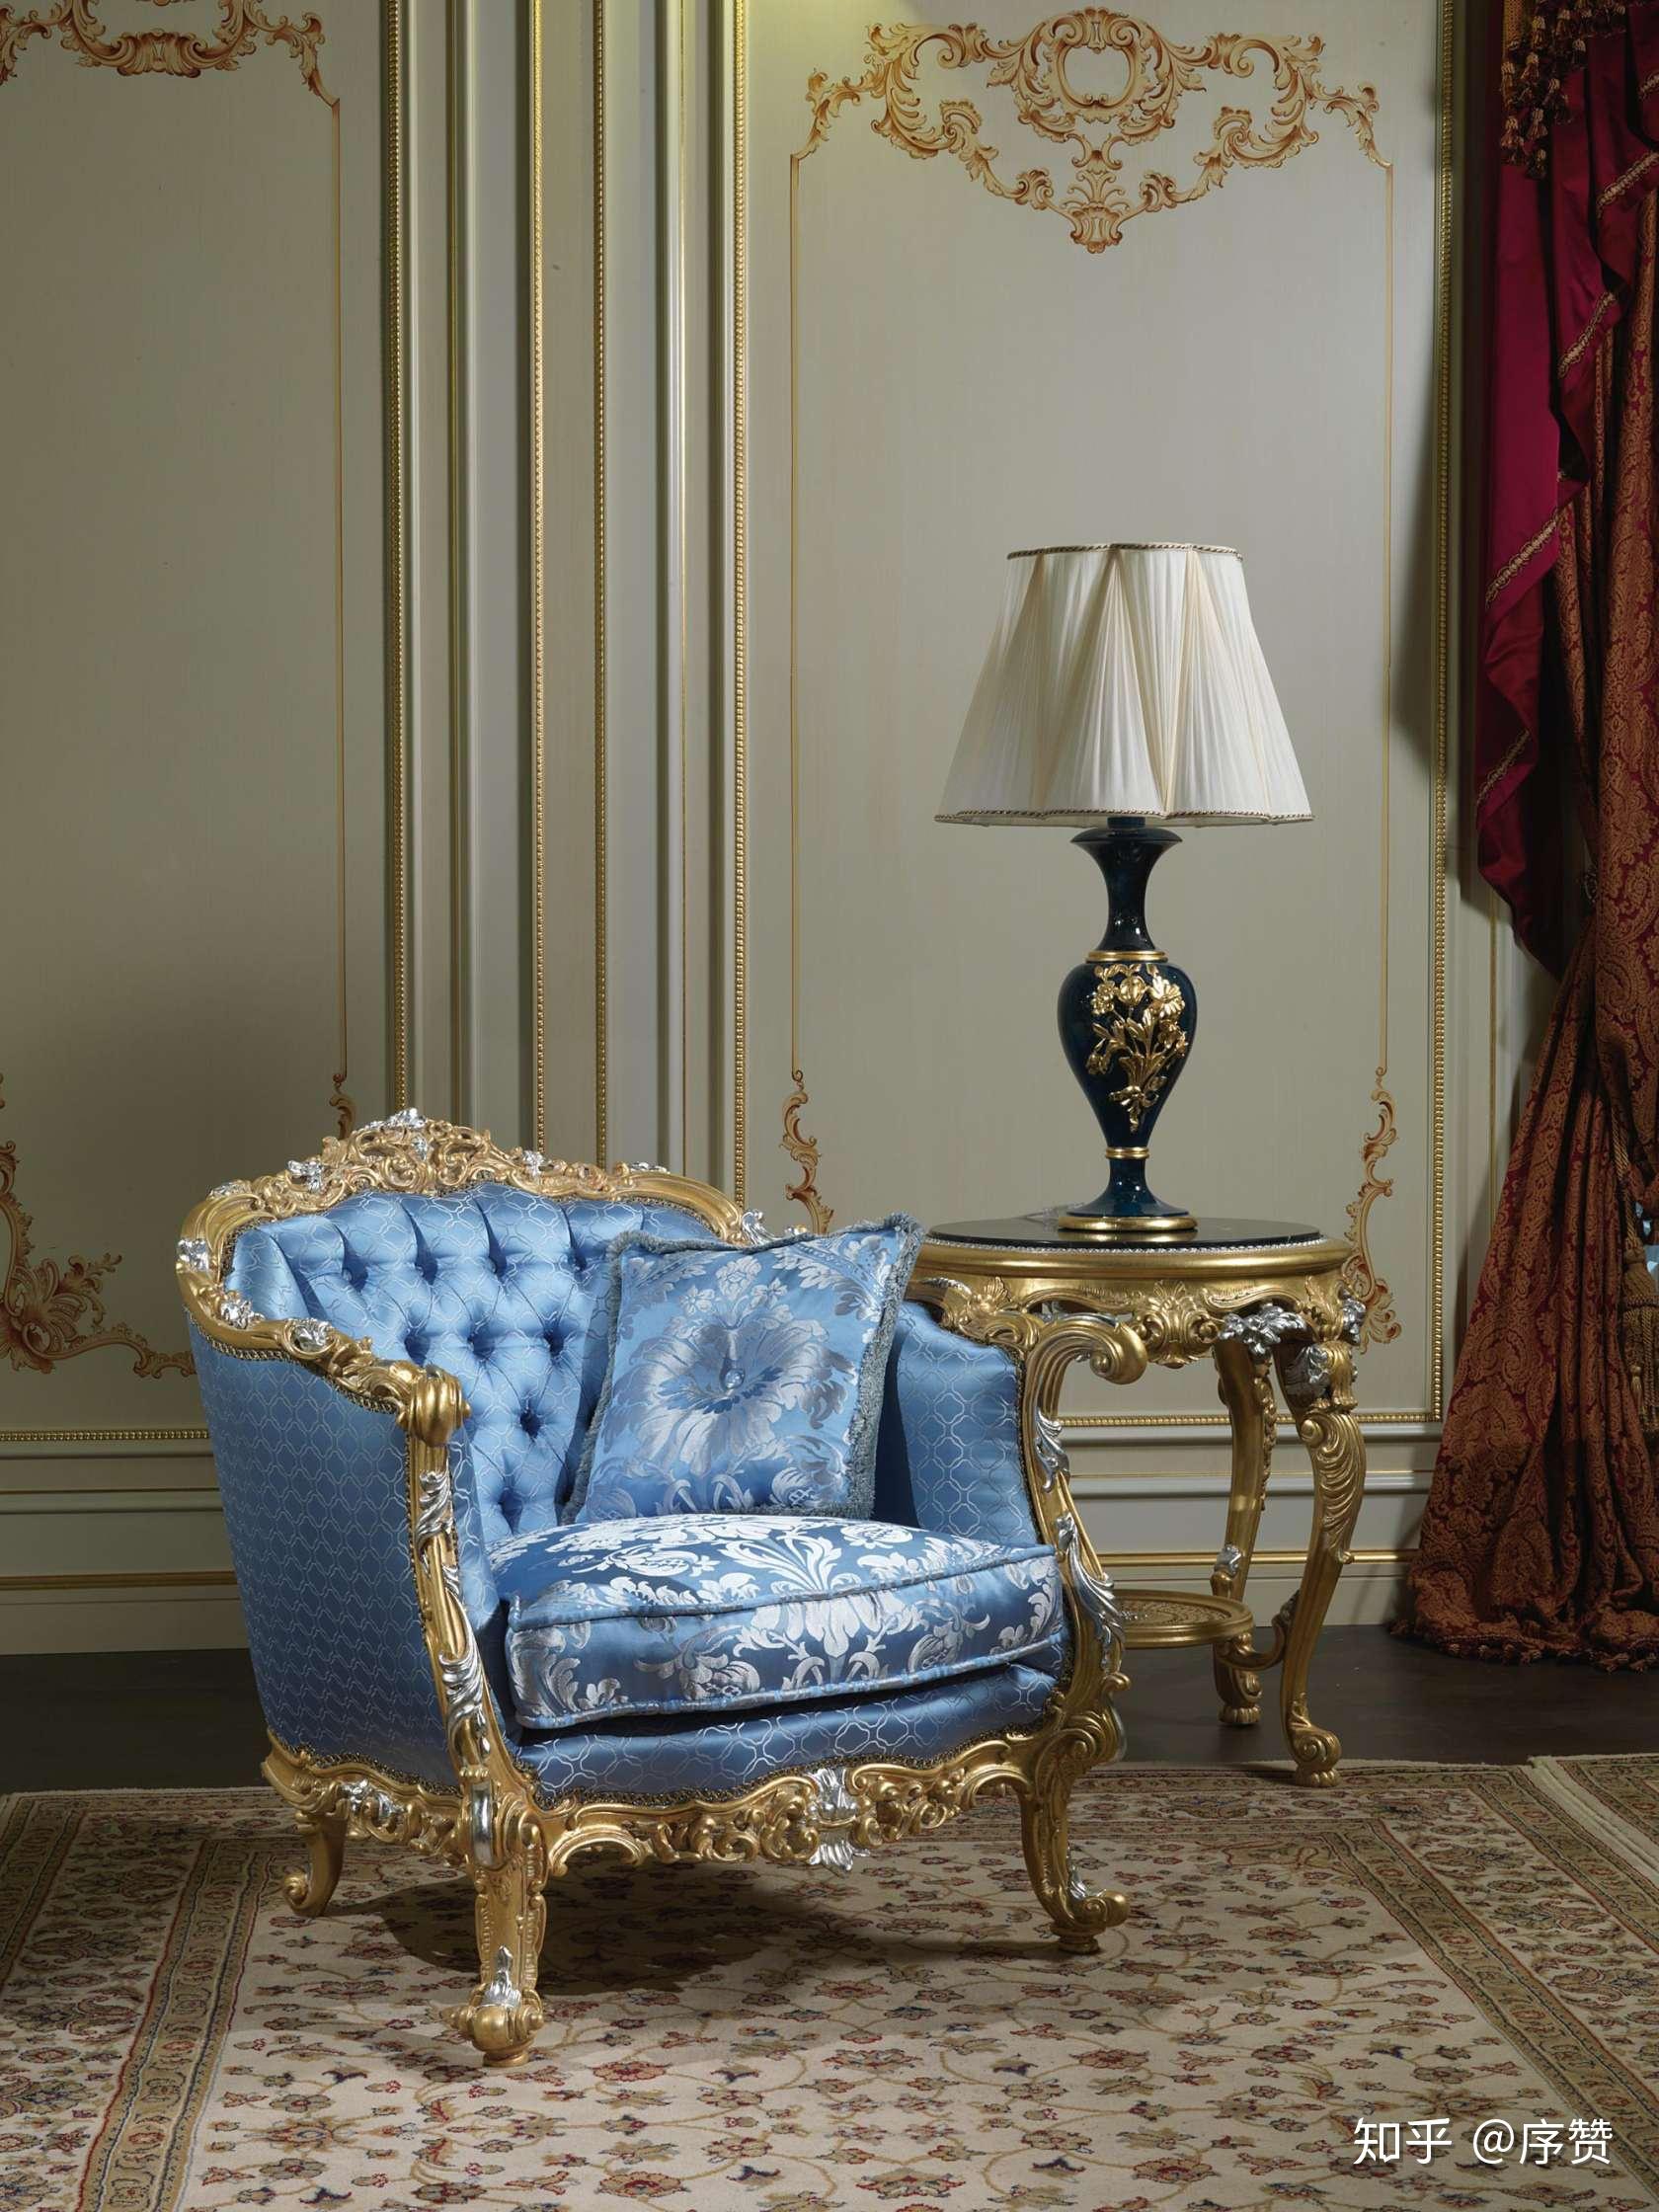 古典的欧式沙发做工细腻,造型大方,极具奢华,是许多上流喜爱的风格